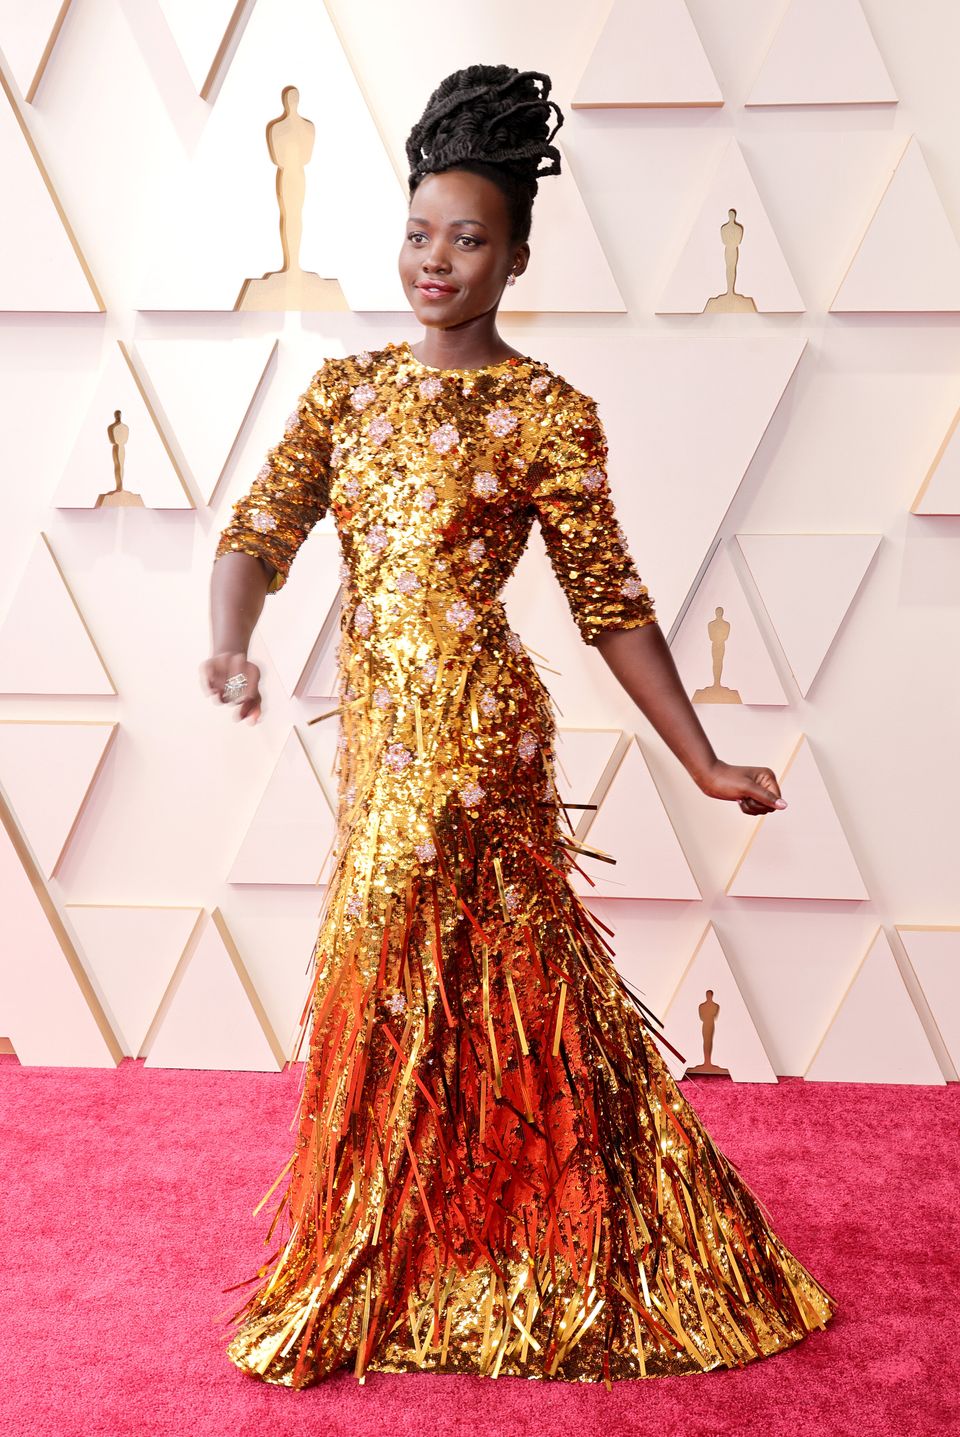 Timothée Chalamet Rocks Shimmering Shirtless Look at 2022 Oscars